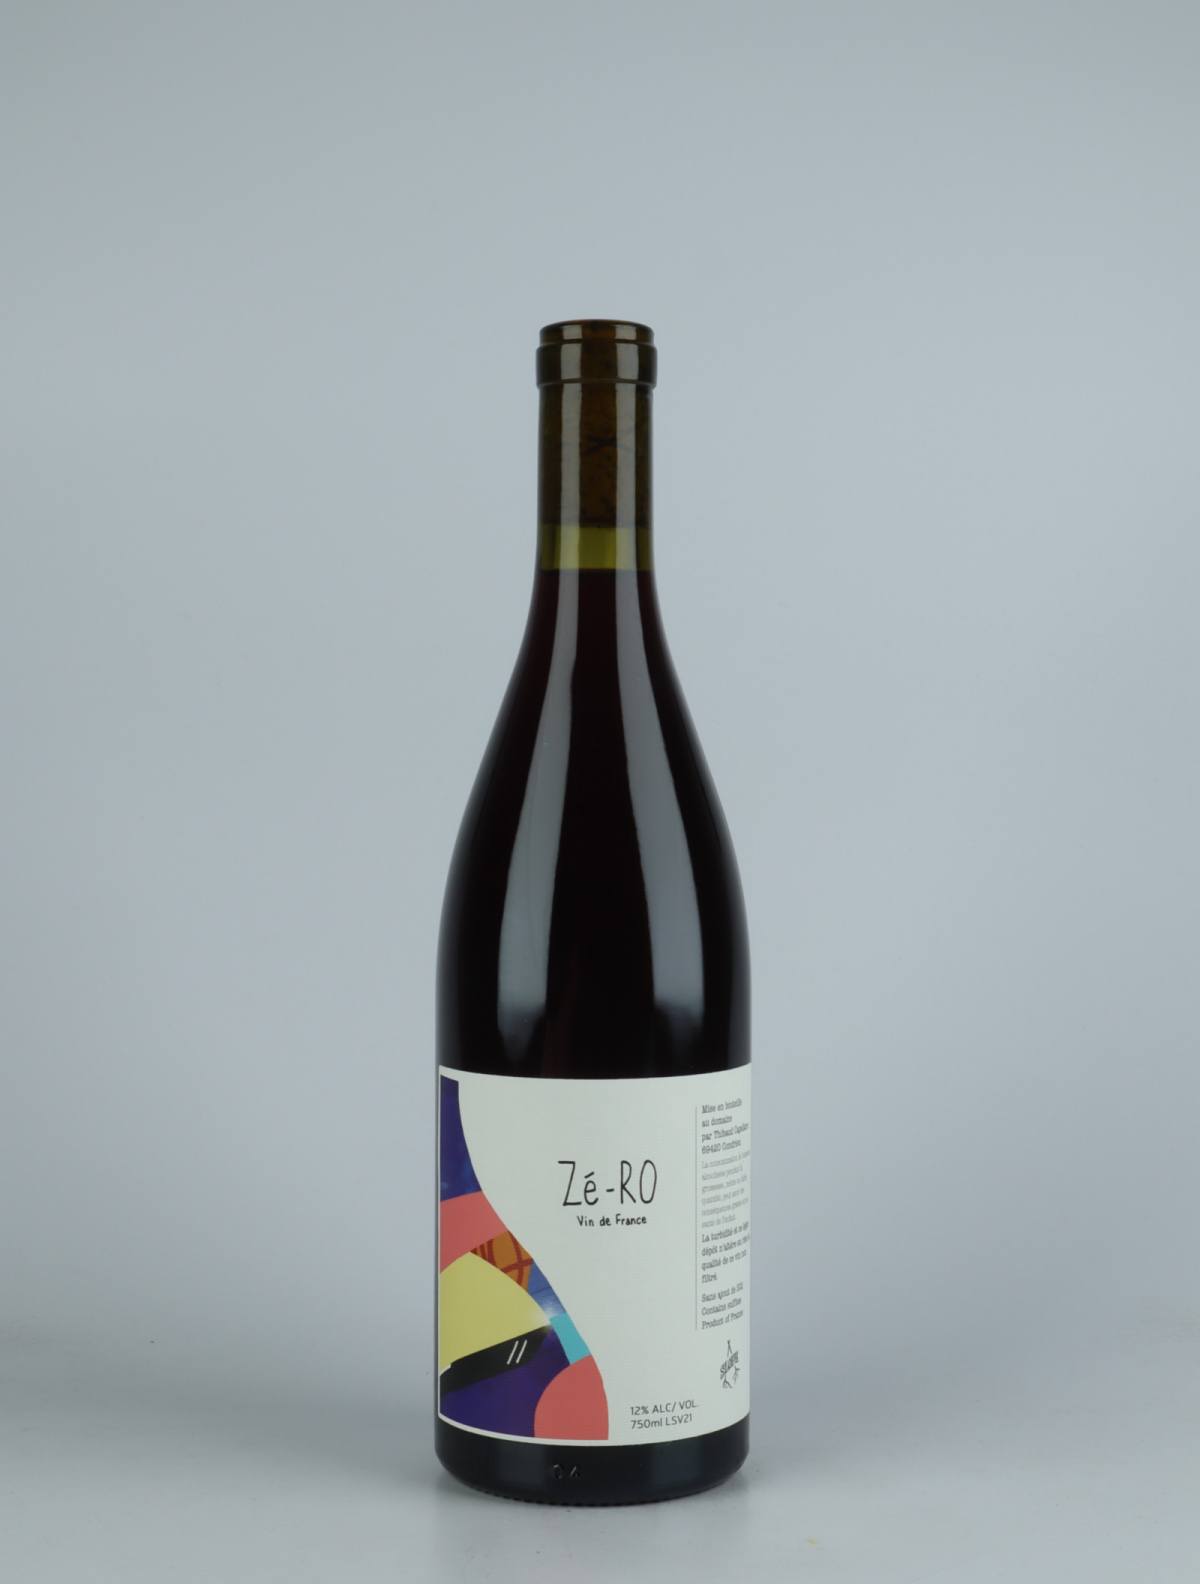 A bottle 2021 Zé-RO Rosé from Slope, Rhône in France